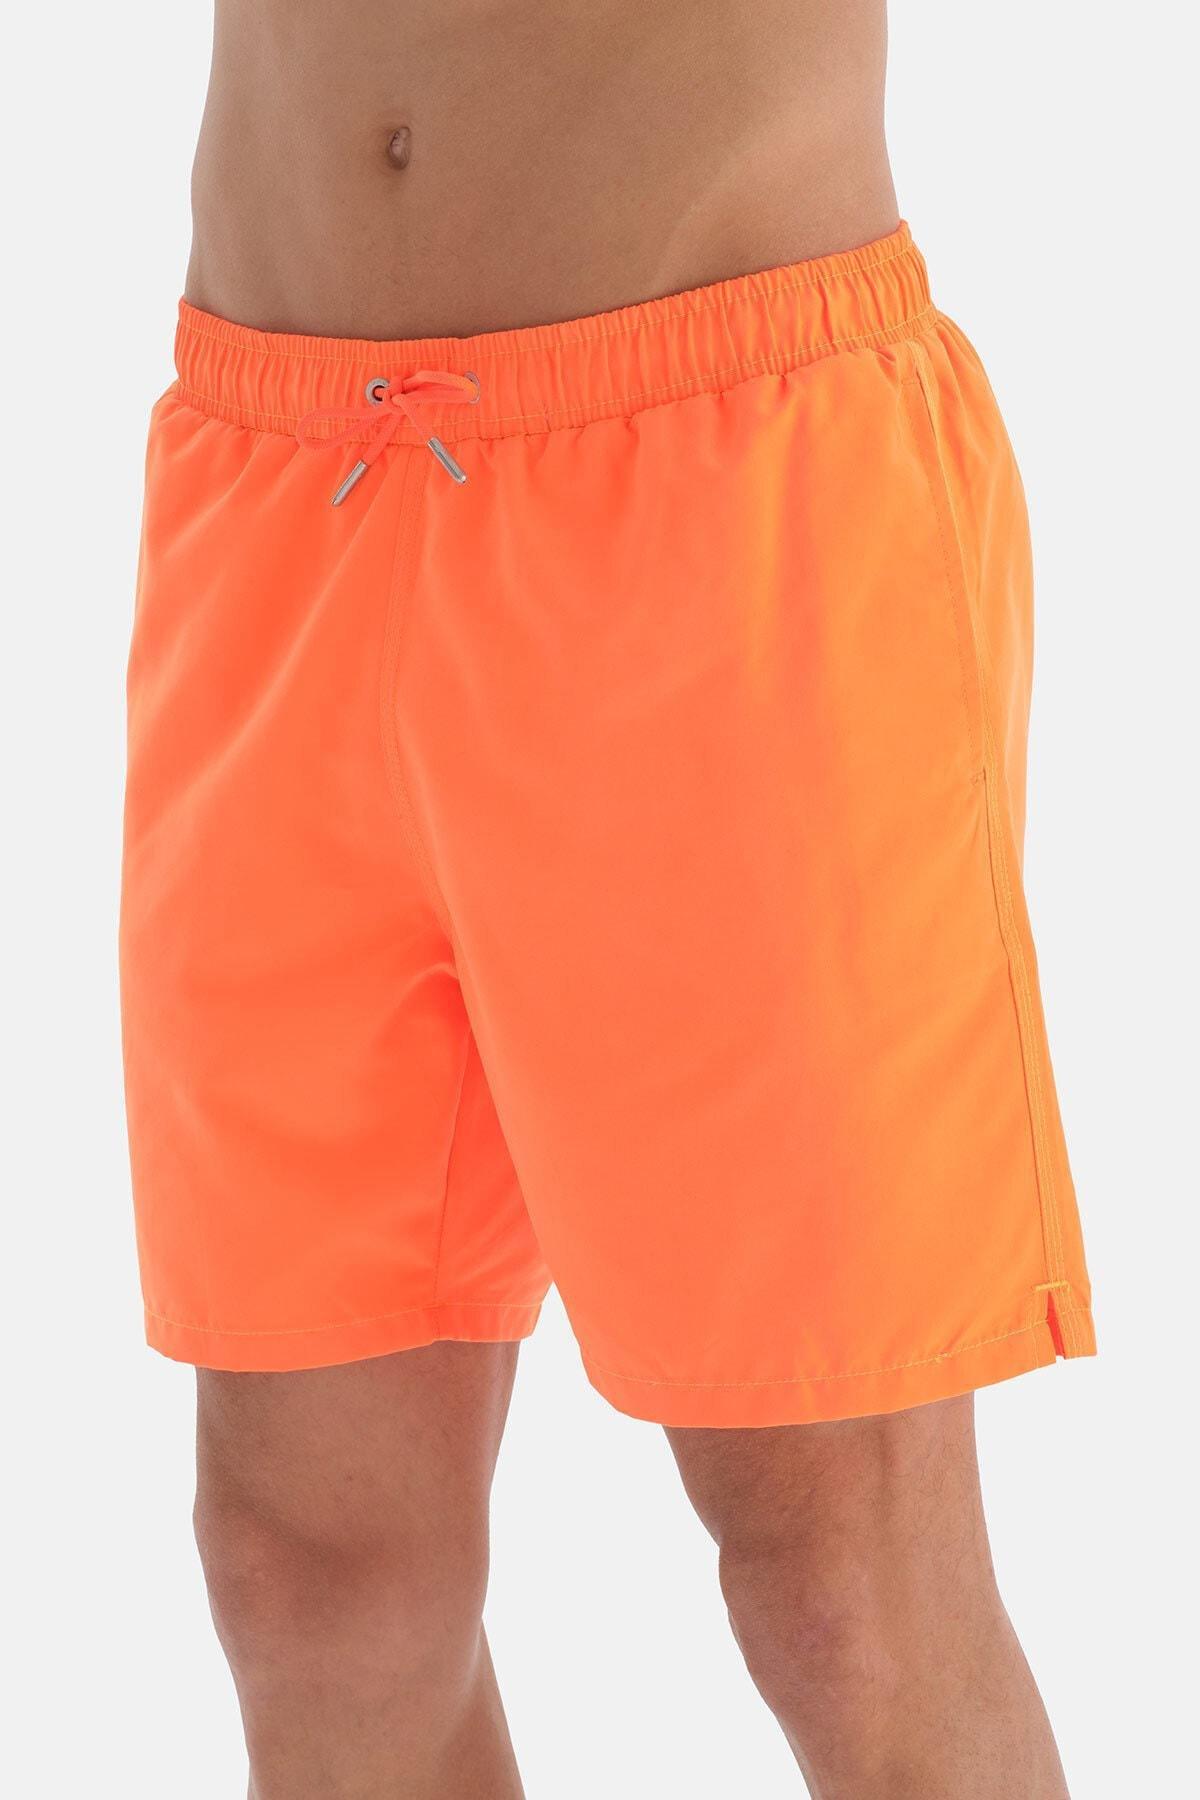 Dagi - Orange Medium Shorts